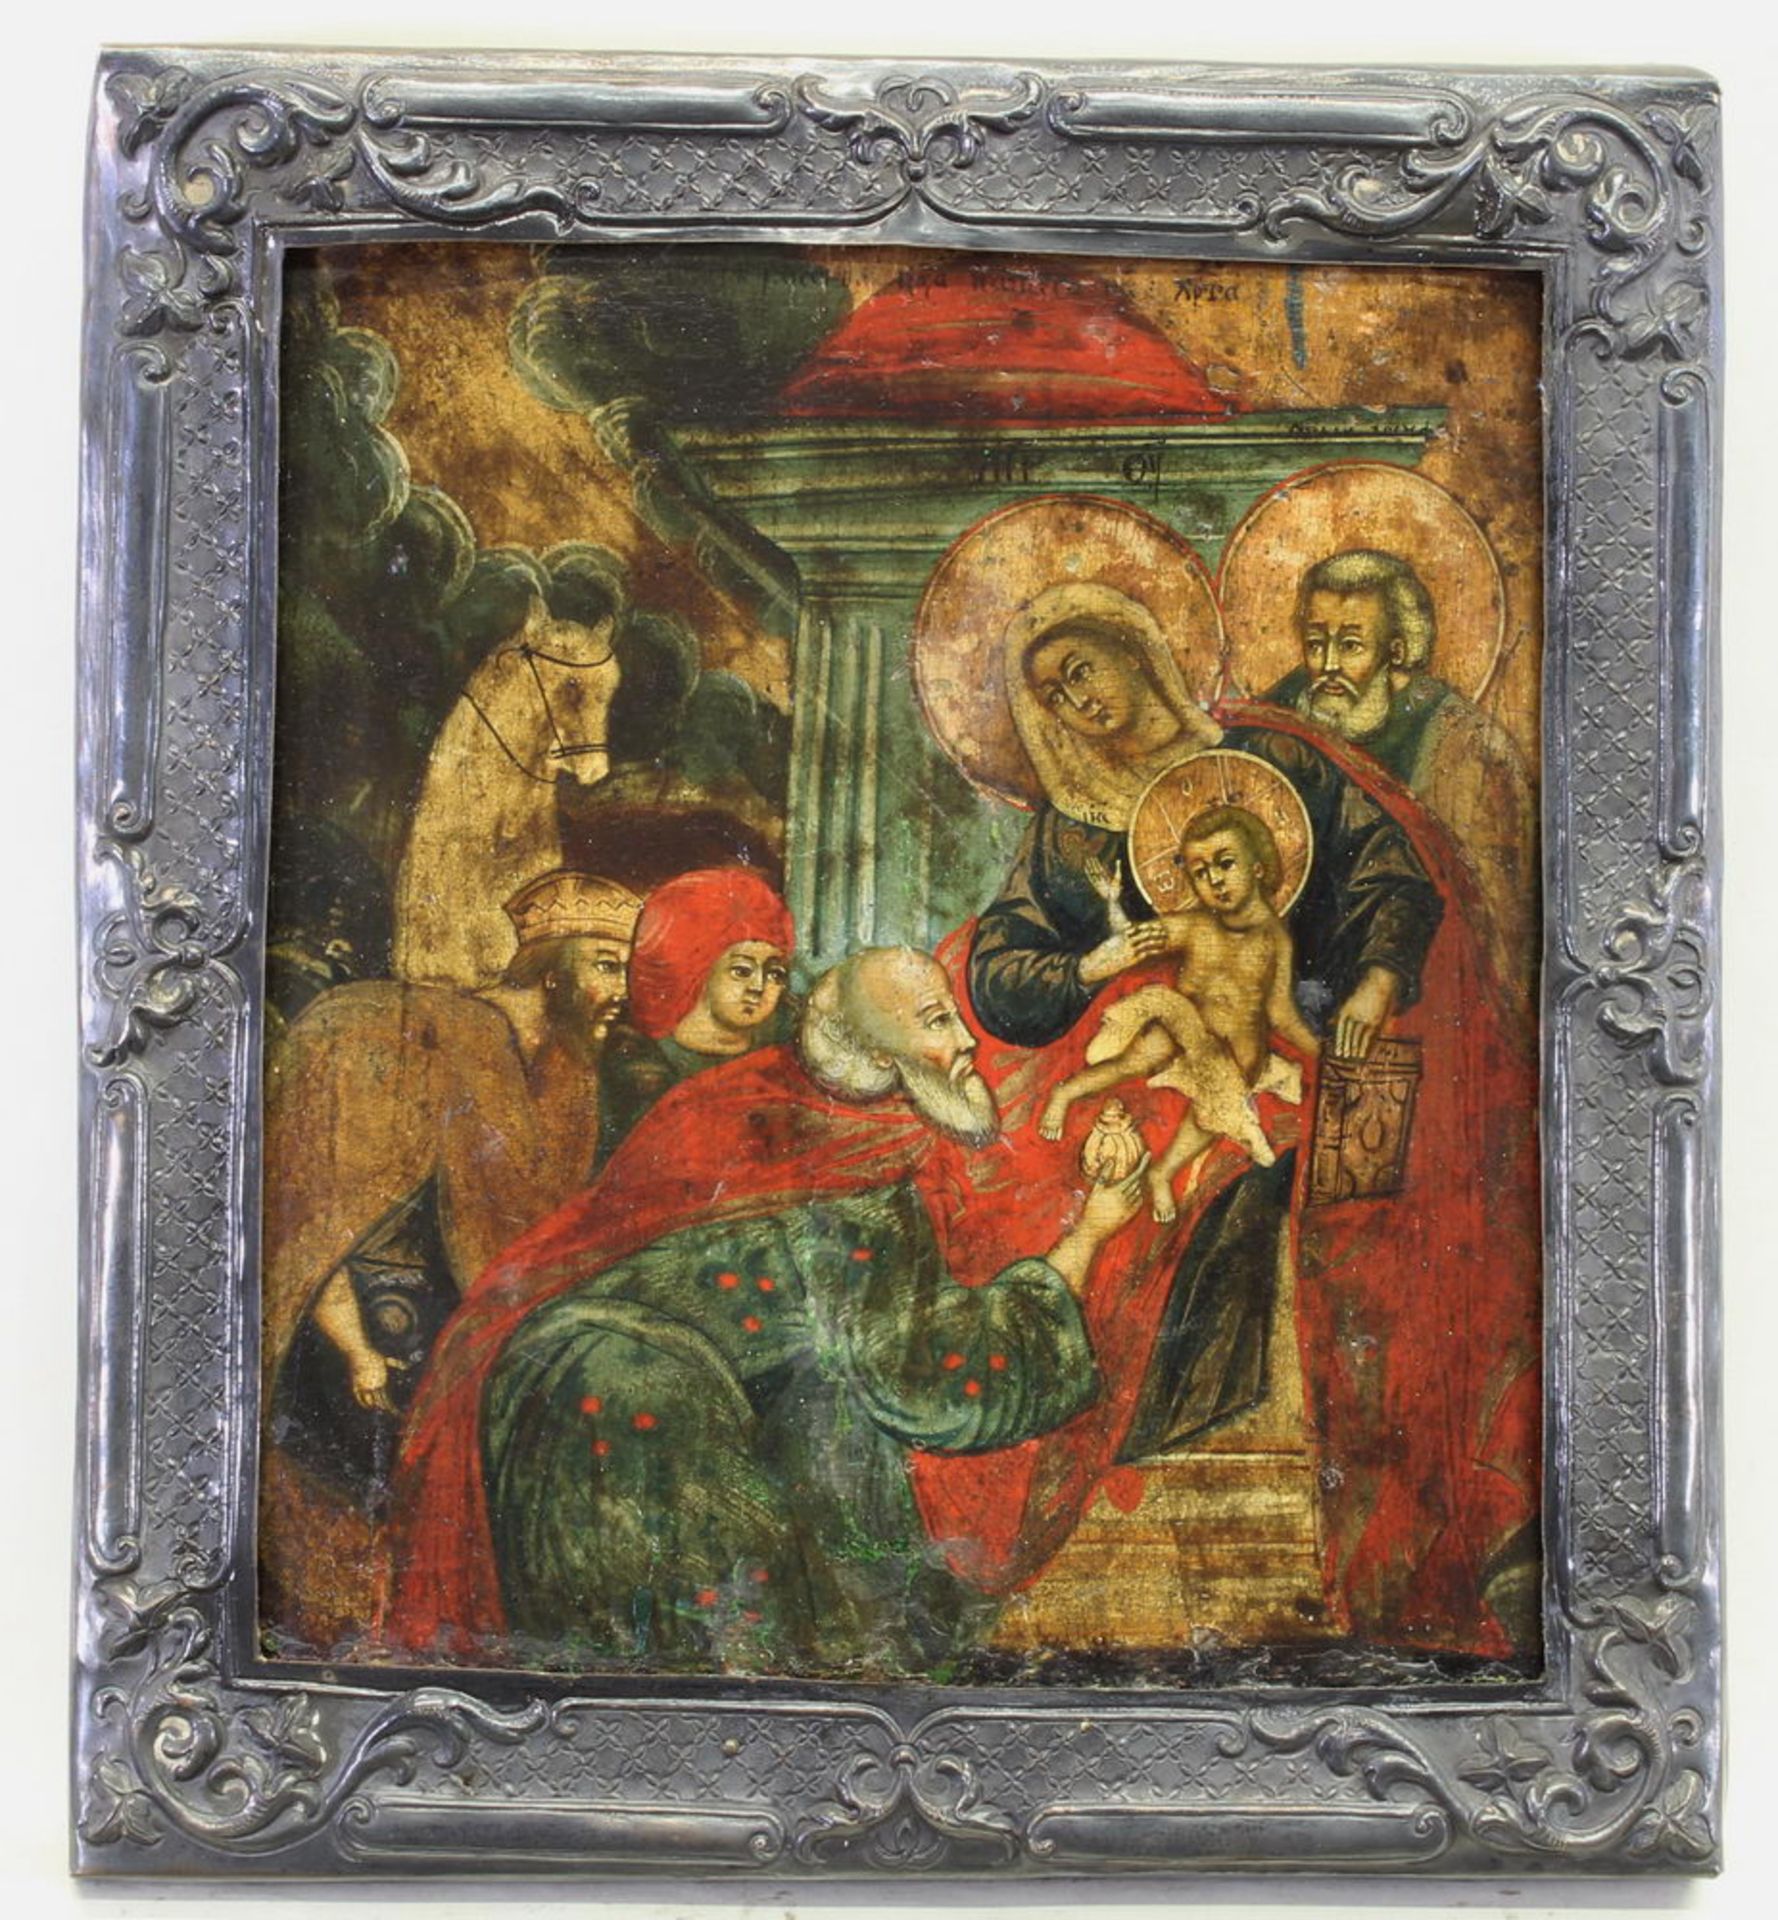 Ikone, Tempera auf Holz, "Anbetung der Hl. Drei Könige", Russland 19. Jh., Metallbasma, 31.5 x 28.